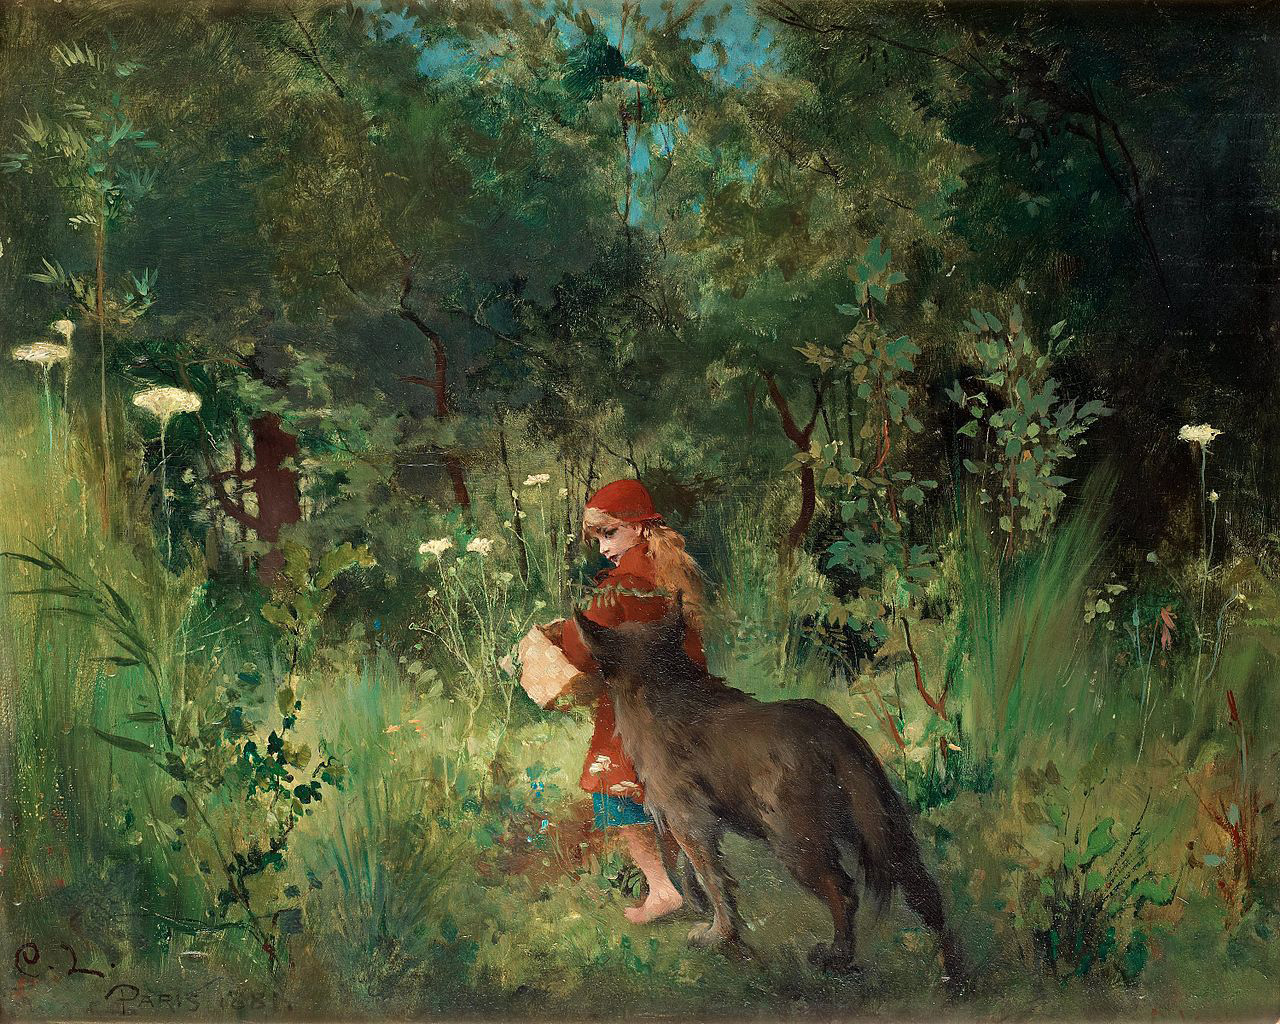 Djevojka u crvenom kaputiću, Crvenkapica, u dubokoj šumi, nosi košaru dok joj vuk znatiželjno prilazi s leđa.